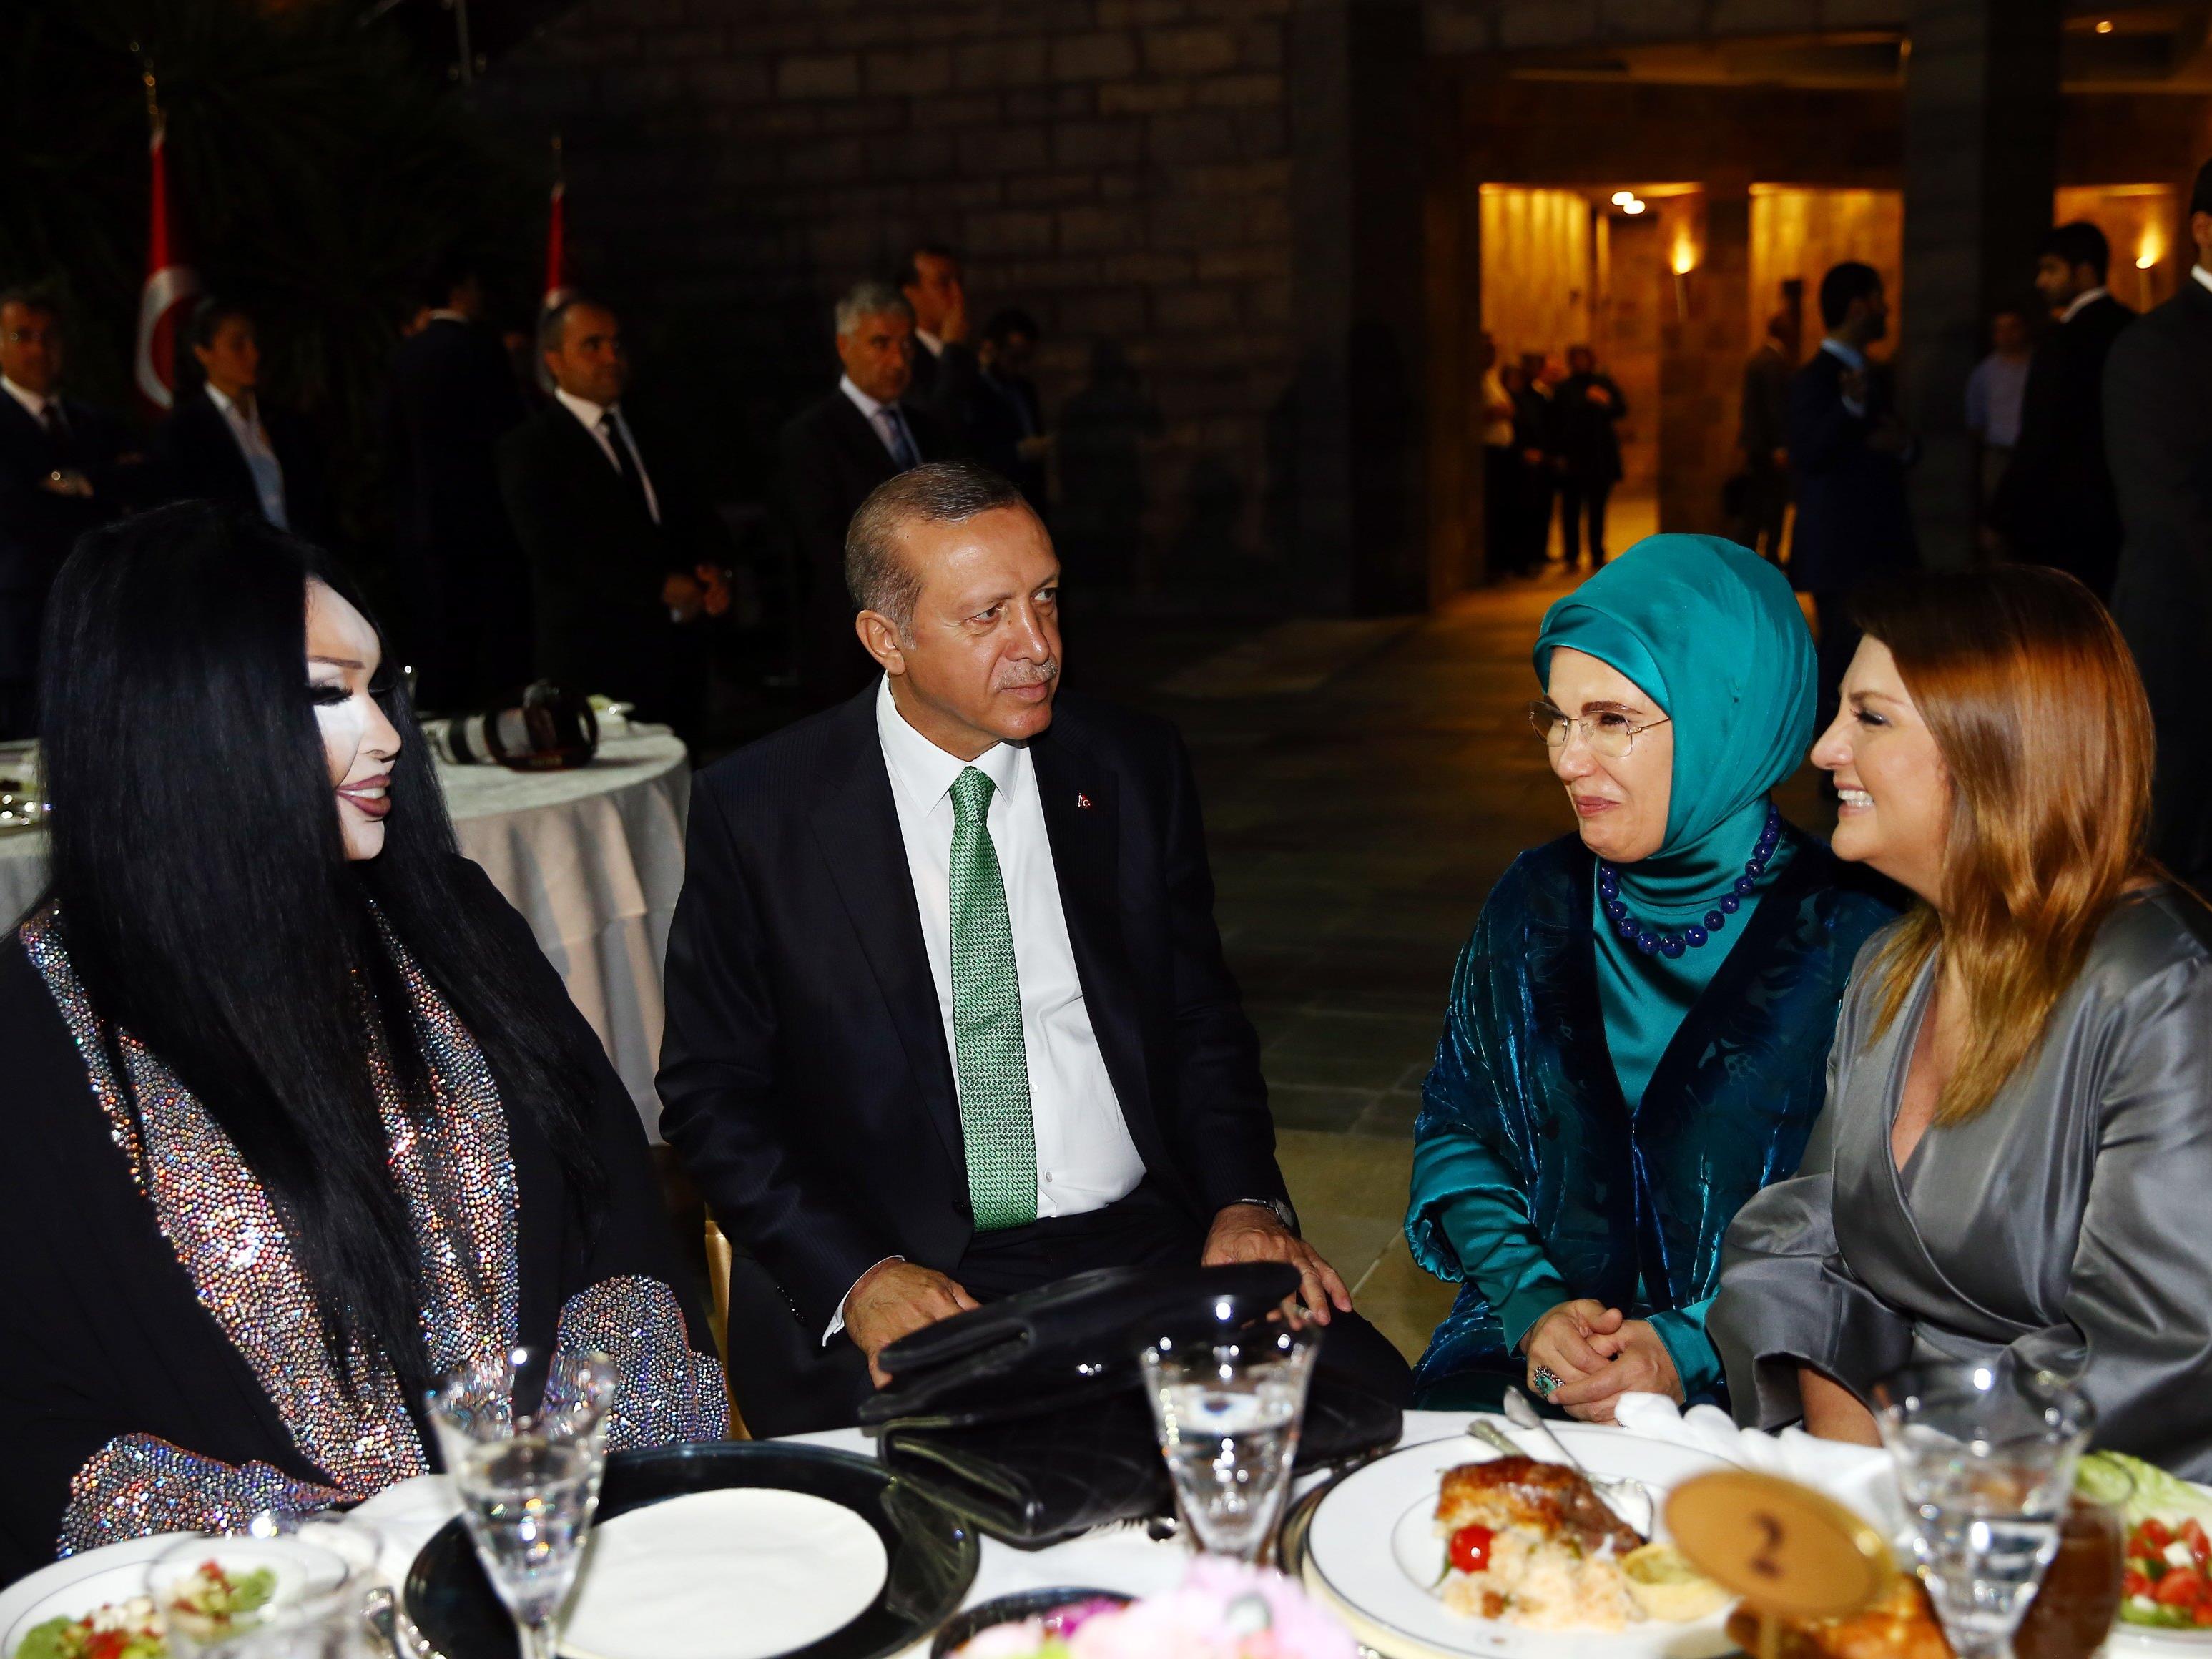 Erdogan mit dem Trans-Star am Tisch